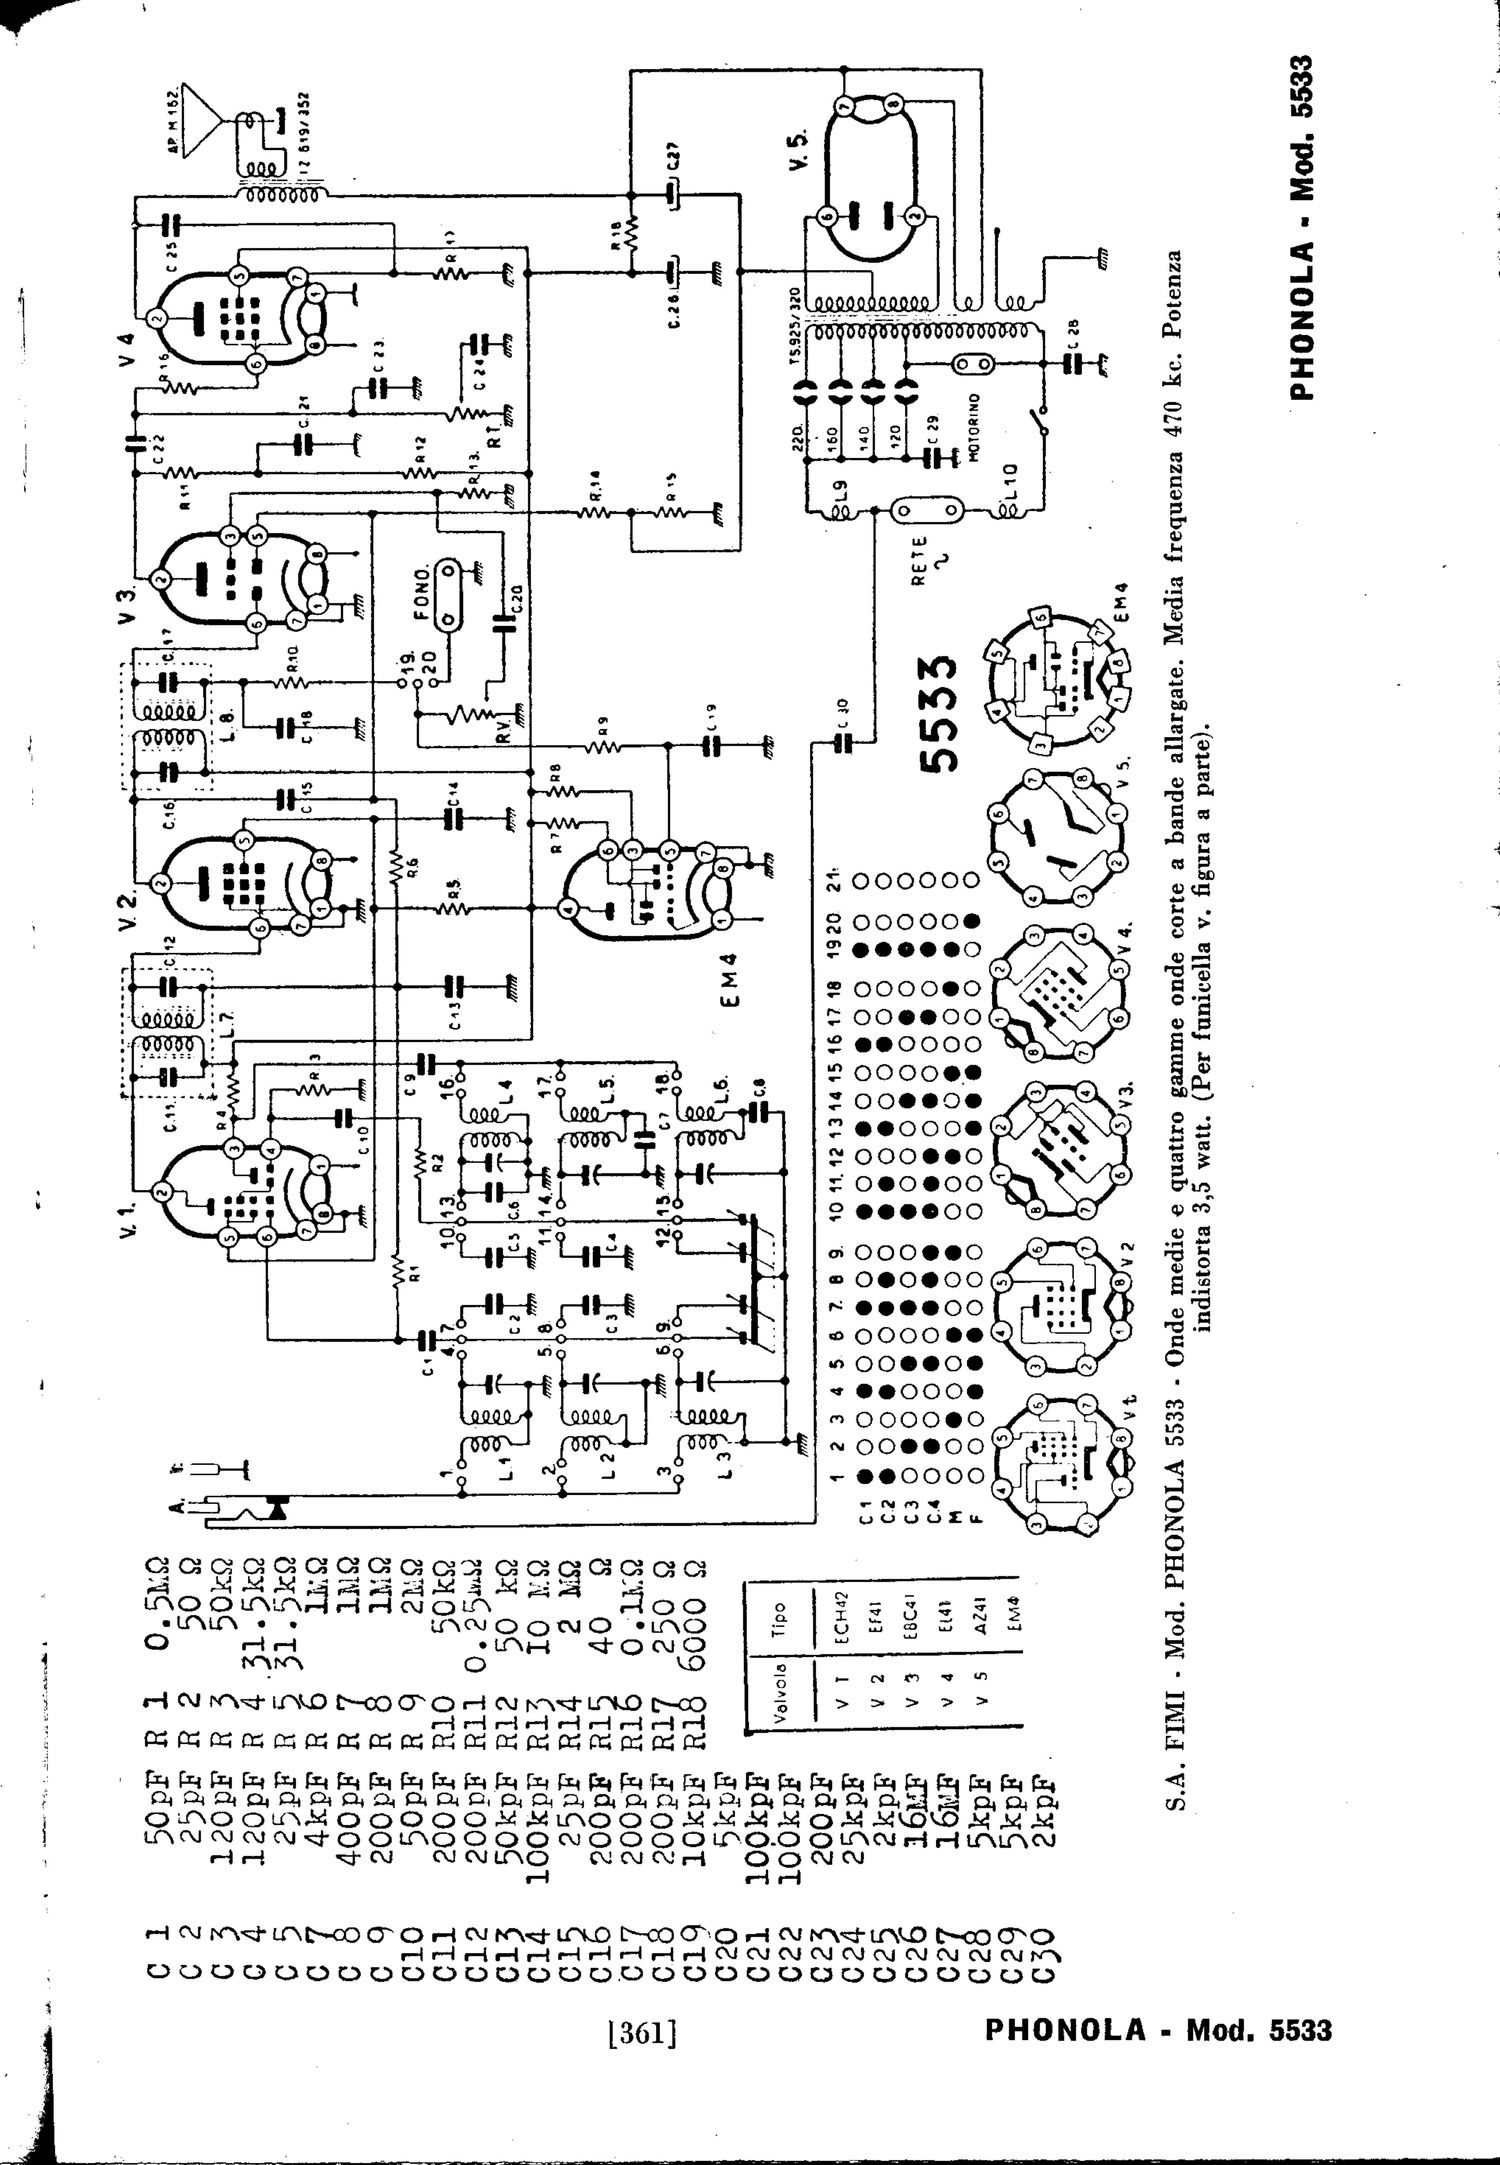 phonola 5533 schematic